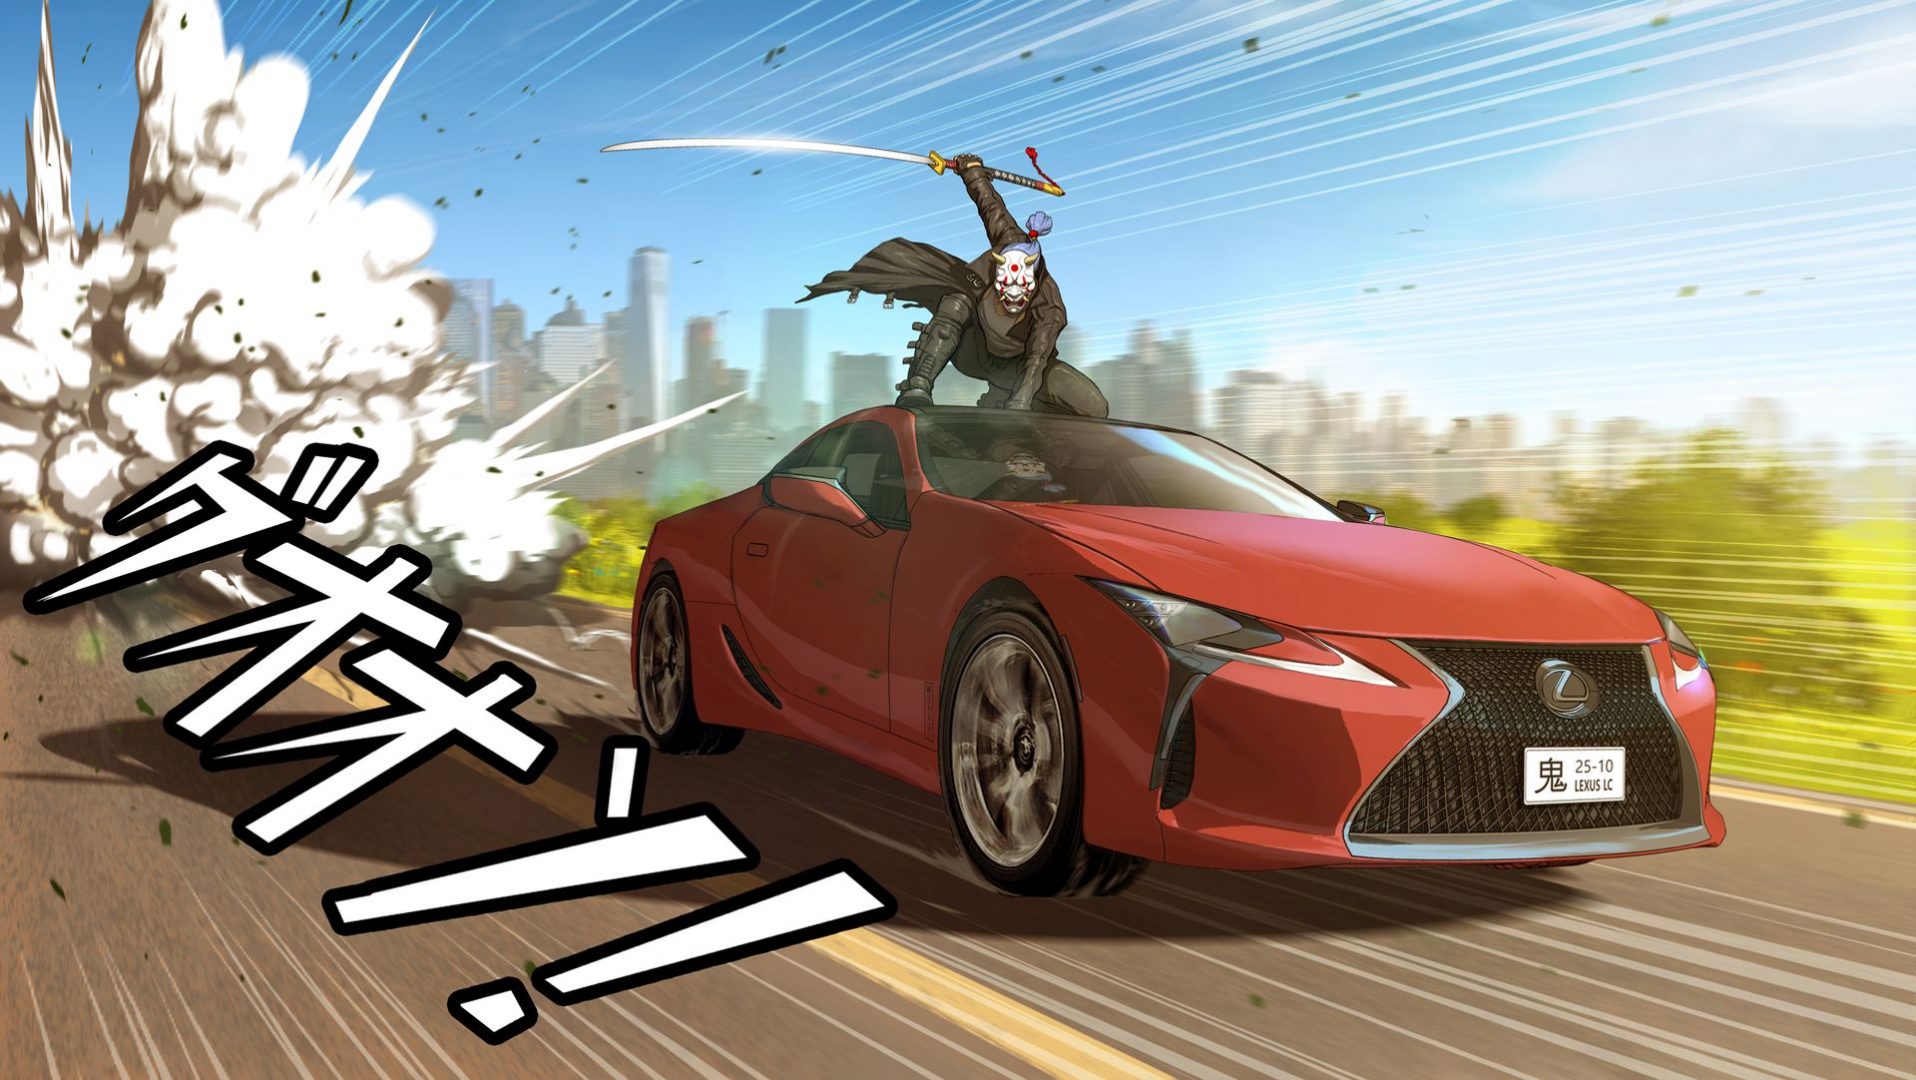 Tri Lexus automobila nakratko su postali junaci japanskog manga stripa